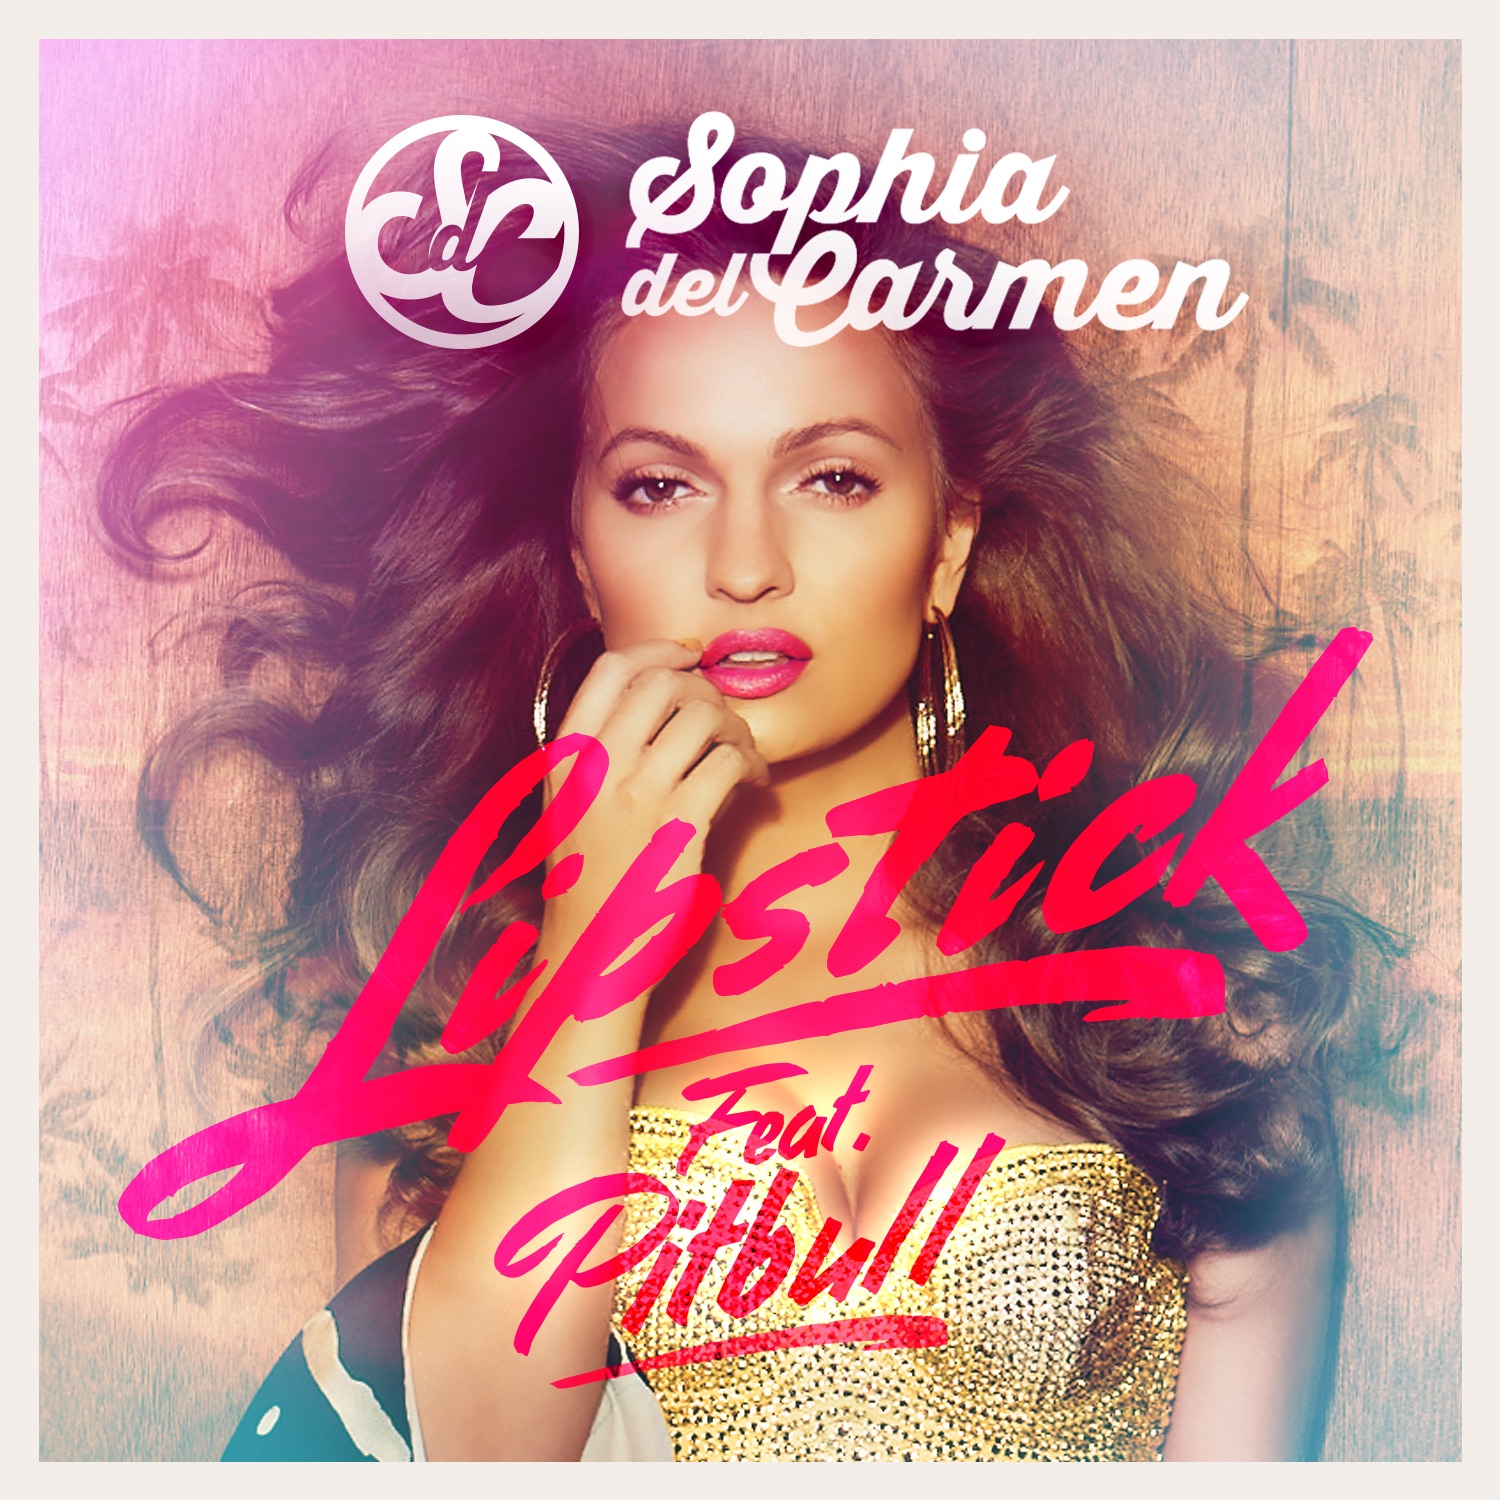 Sophia Del Carmen featuring Pitbull — Lipstick cover artwork